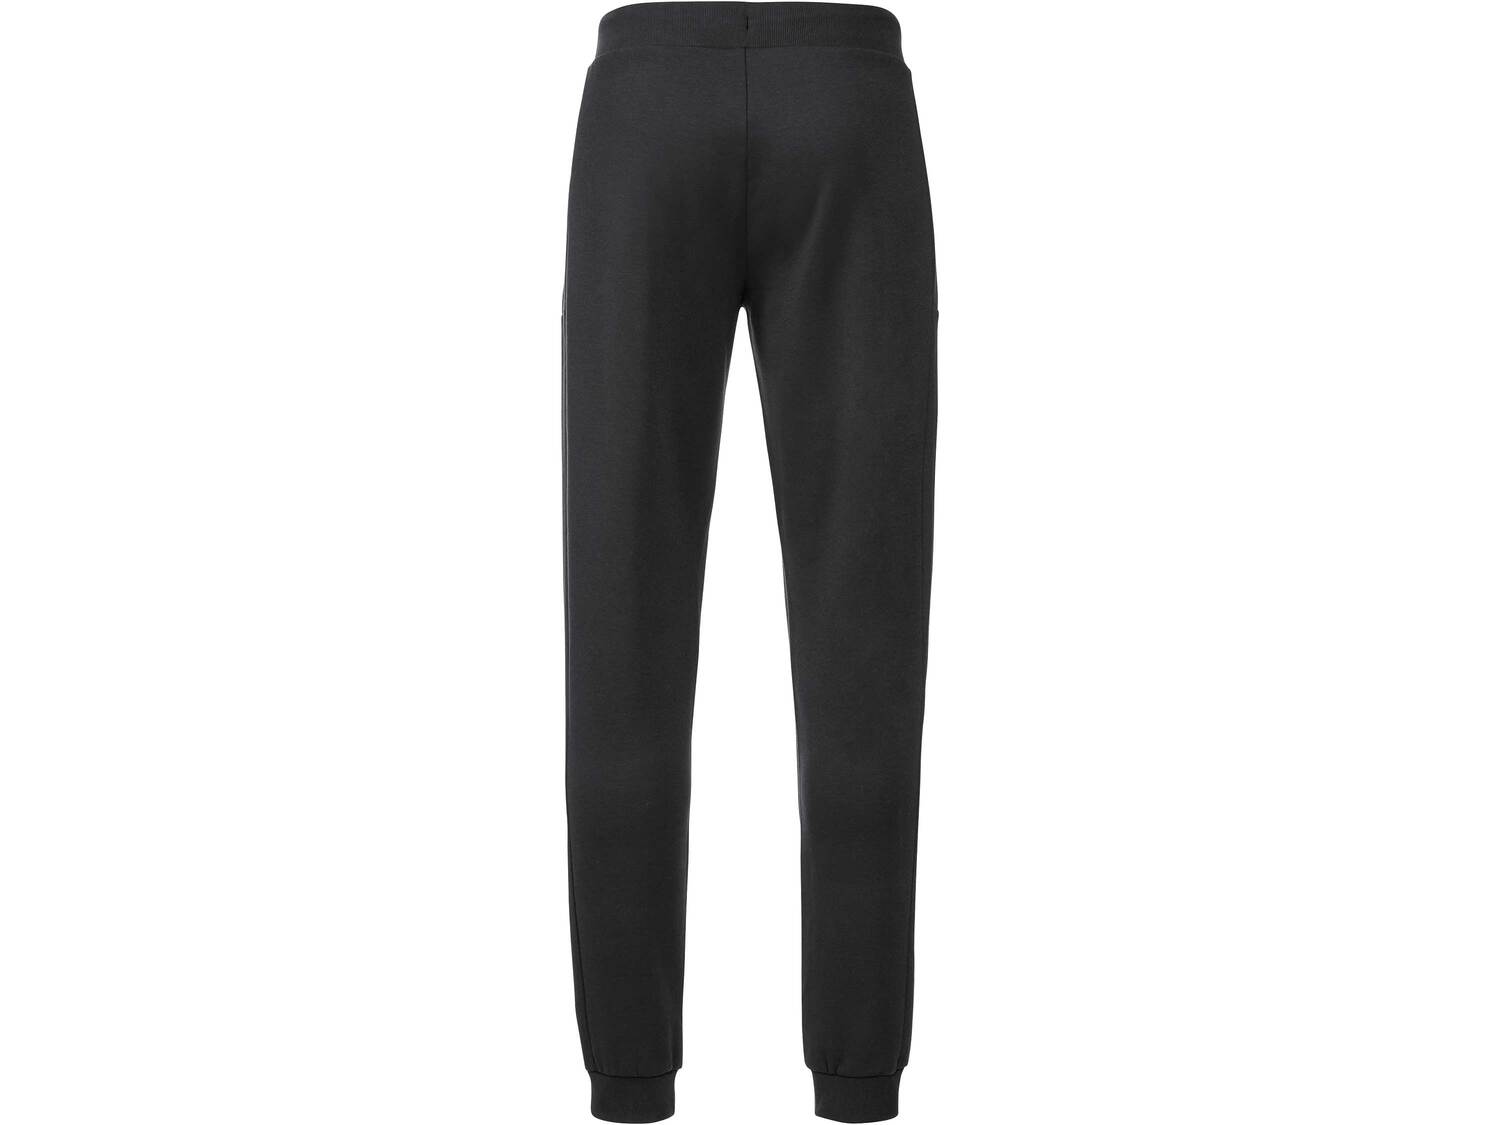 Spodnie dresowe z bawełną Crivit, cena 34,99 PLN 
męskie 
- rozmiary: S-XL
- ...